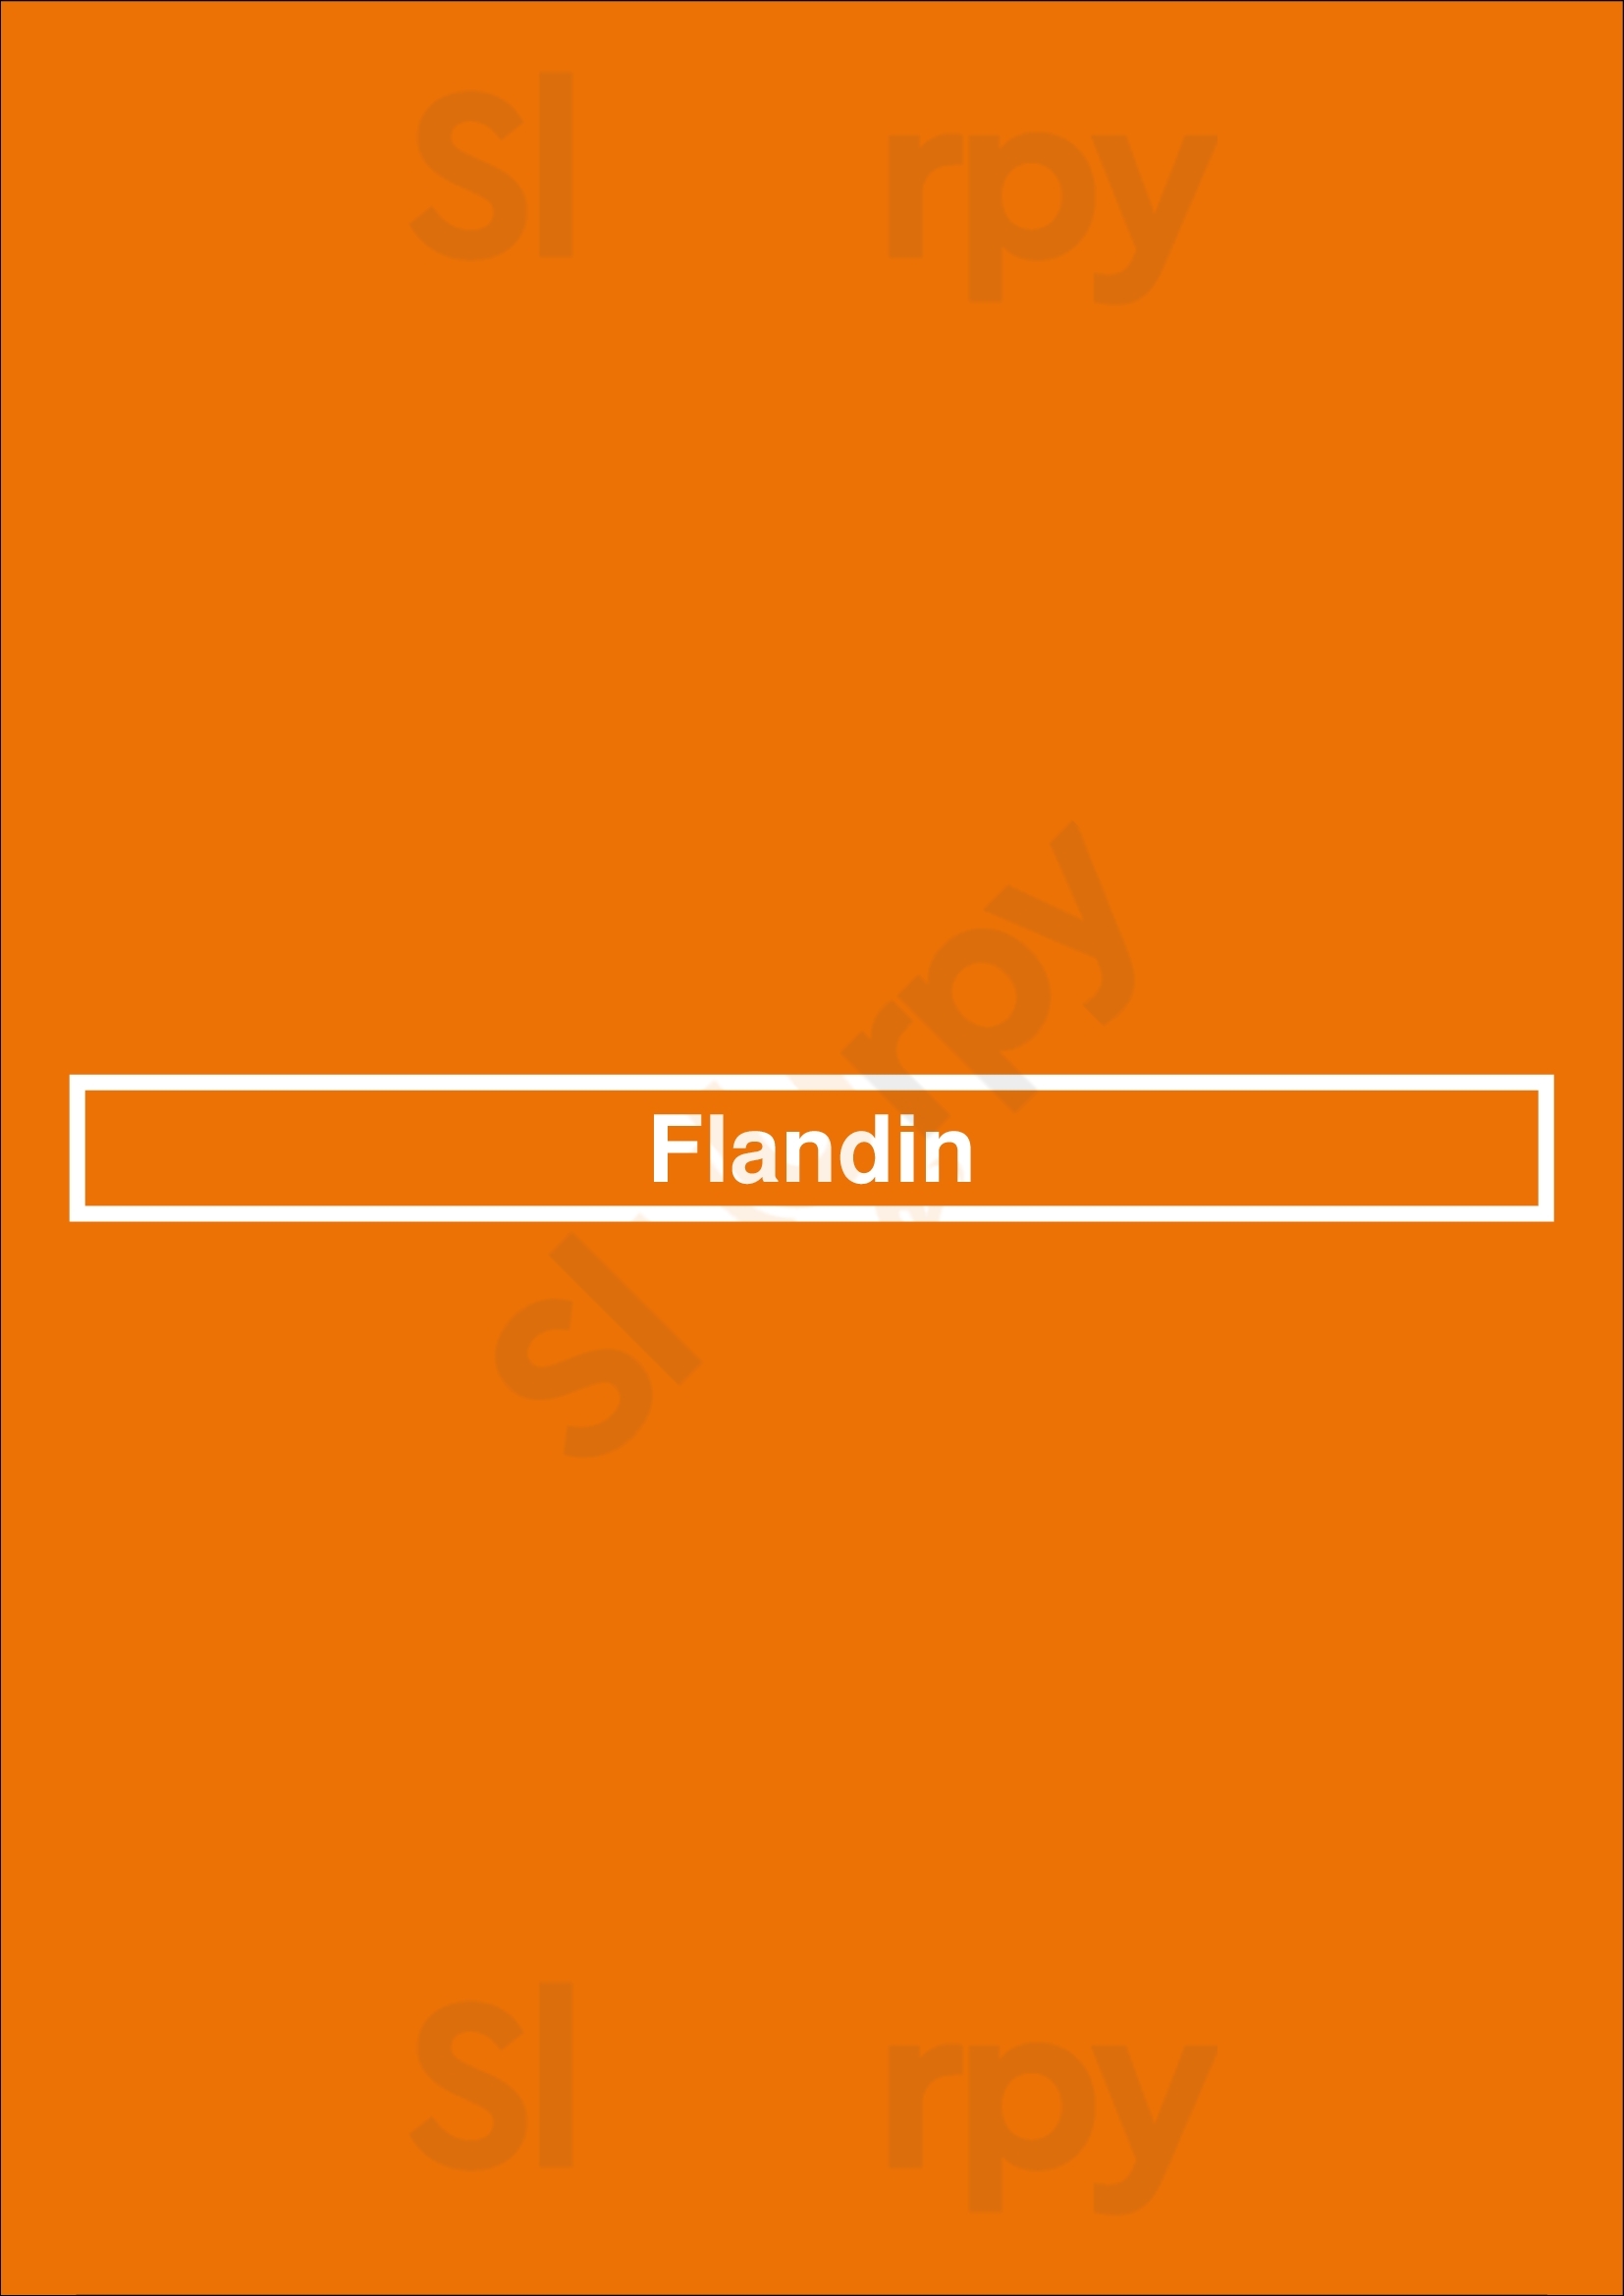 Flandin Lyon Menu - 1